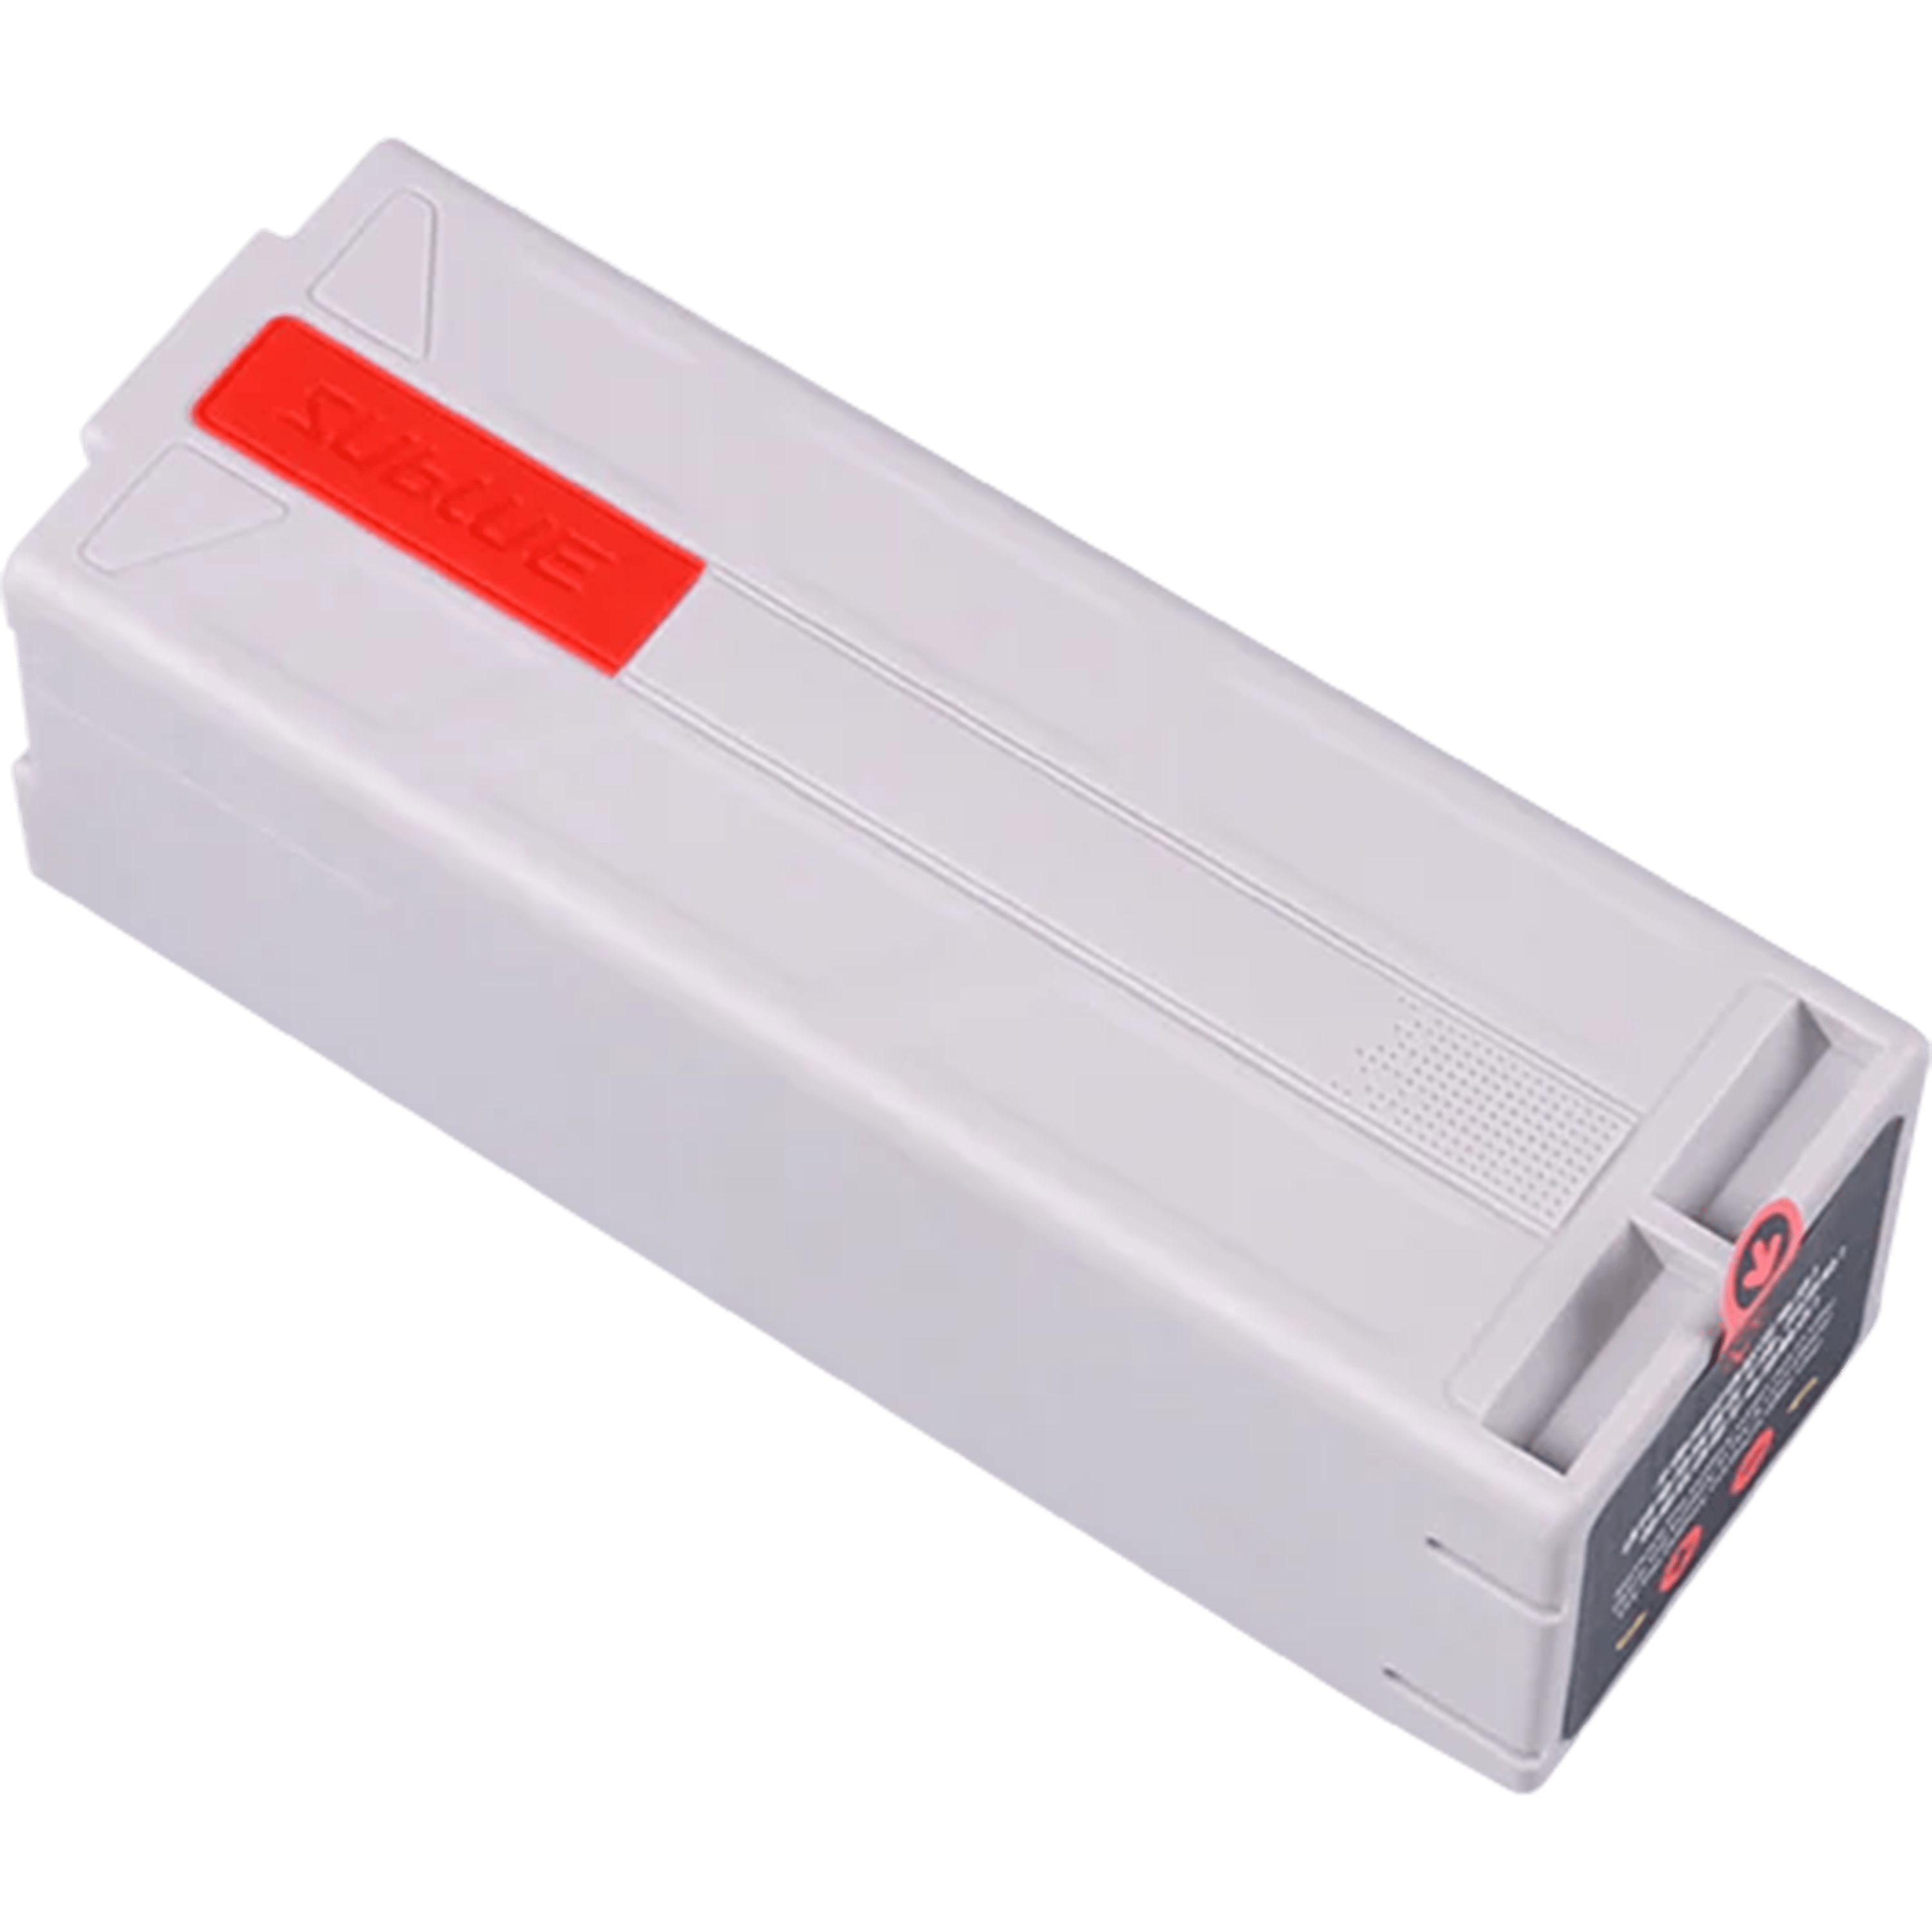 סוללה לסקוטר- Lithium ION Battery Pack For Home Appliance 122Wh אפור